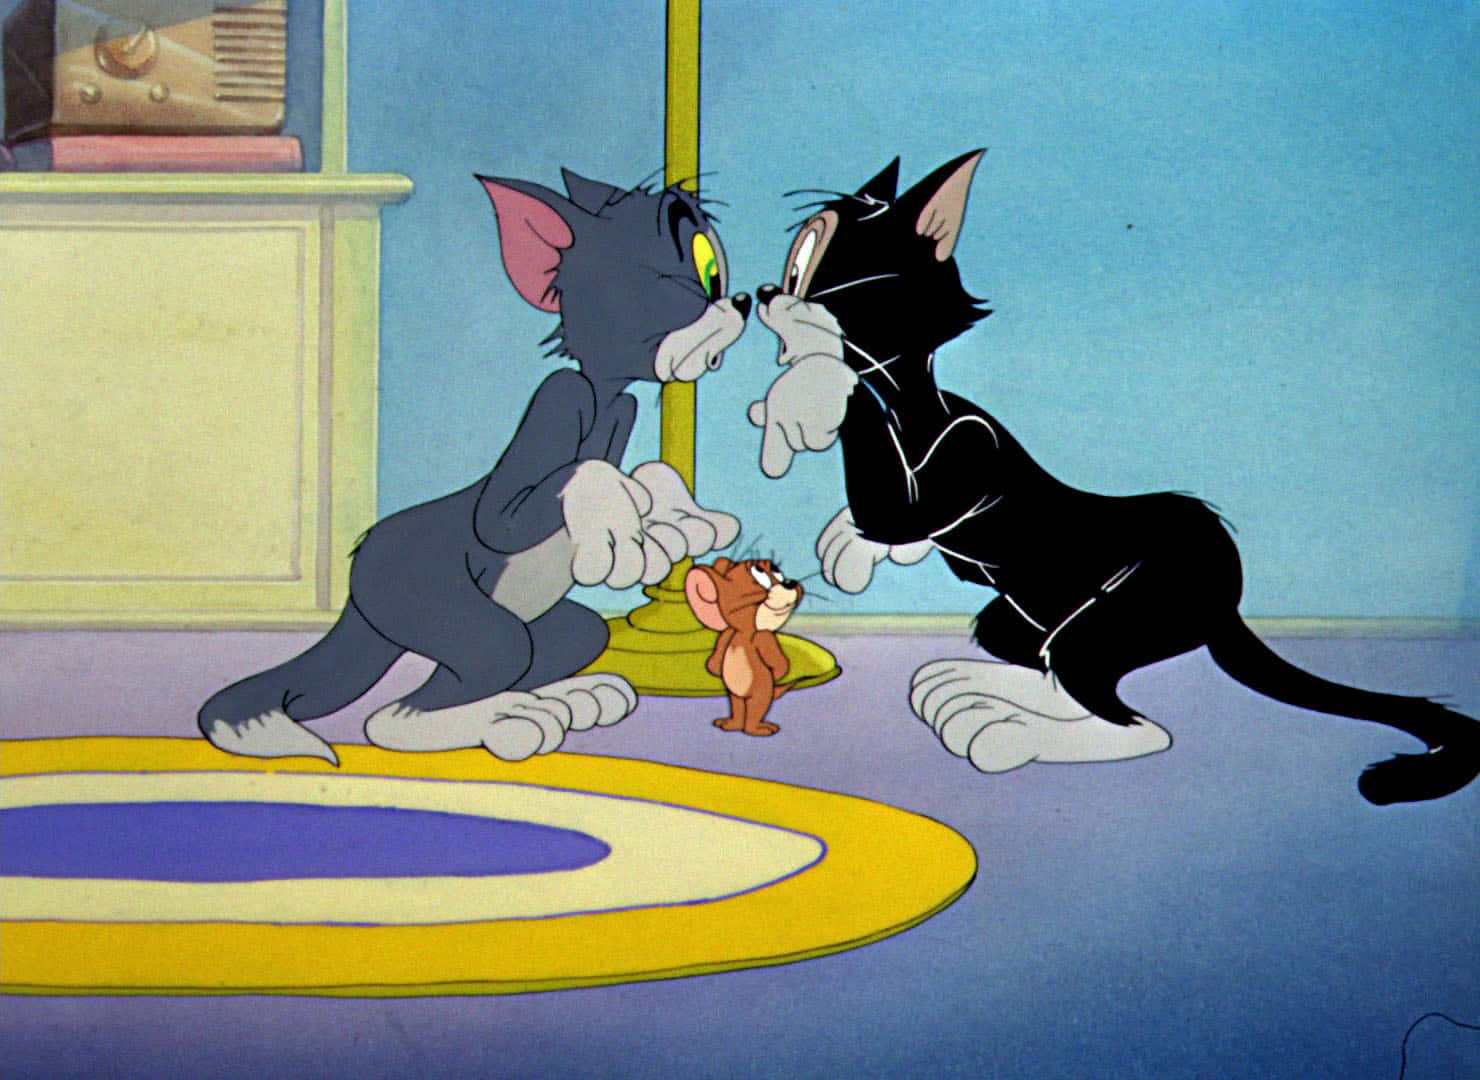 Tomy Jerry Siempre Metidos En Travesuras Divertidas. Fondo de pantalla